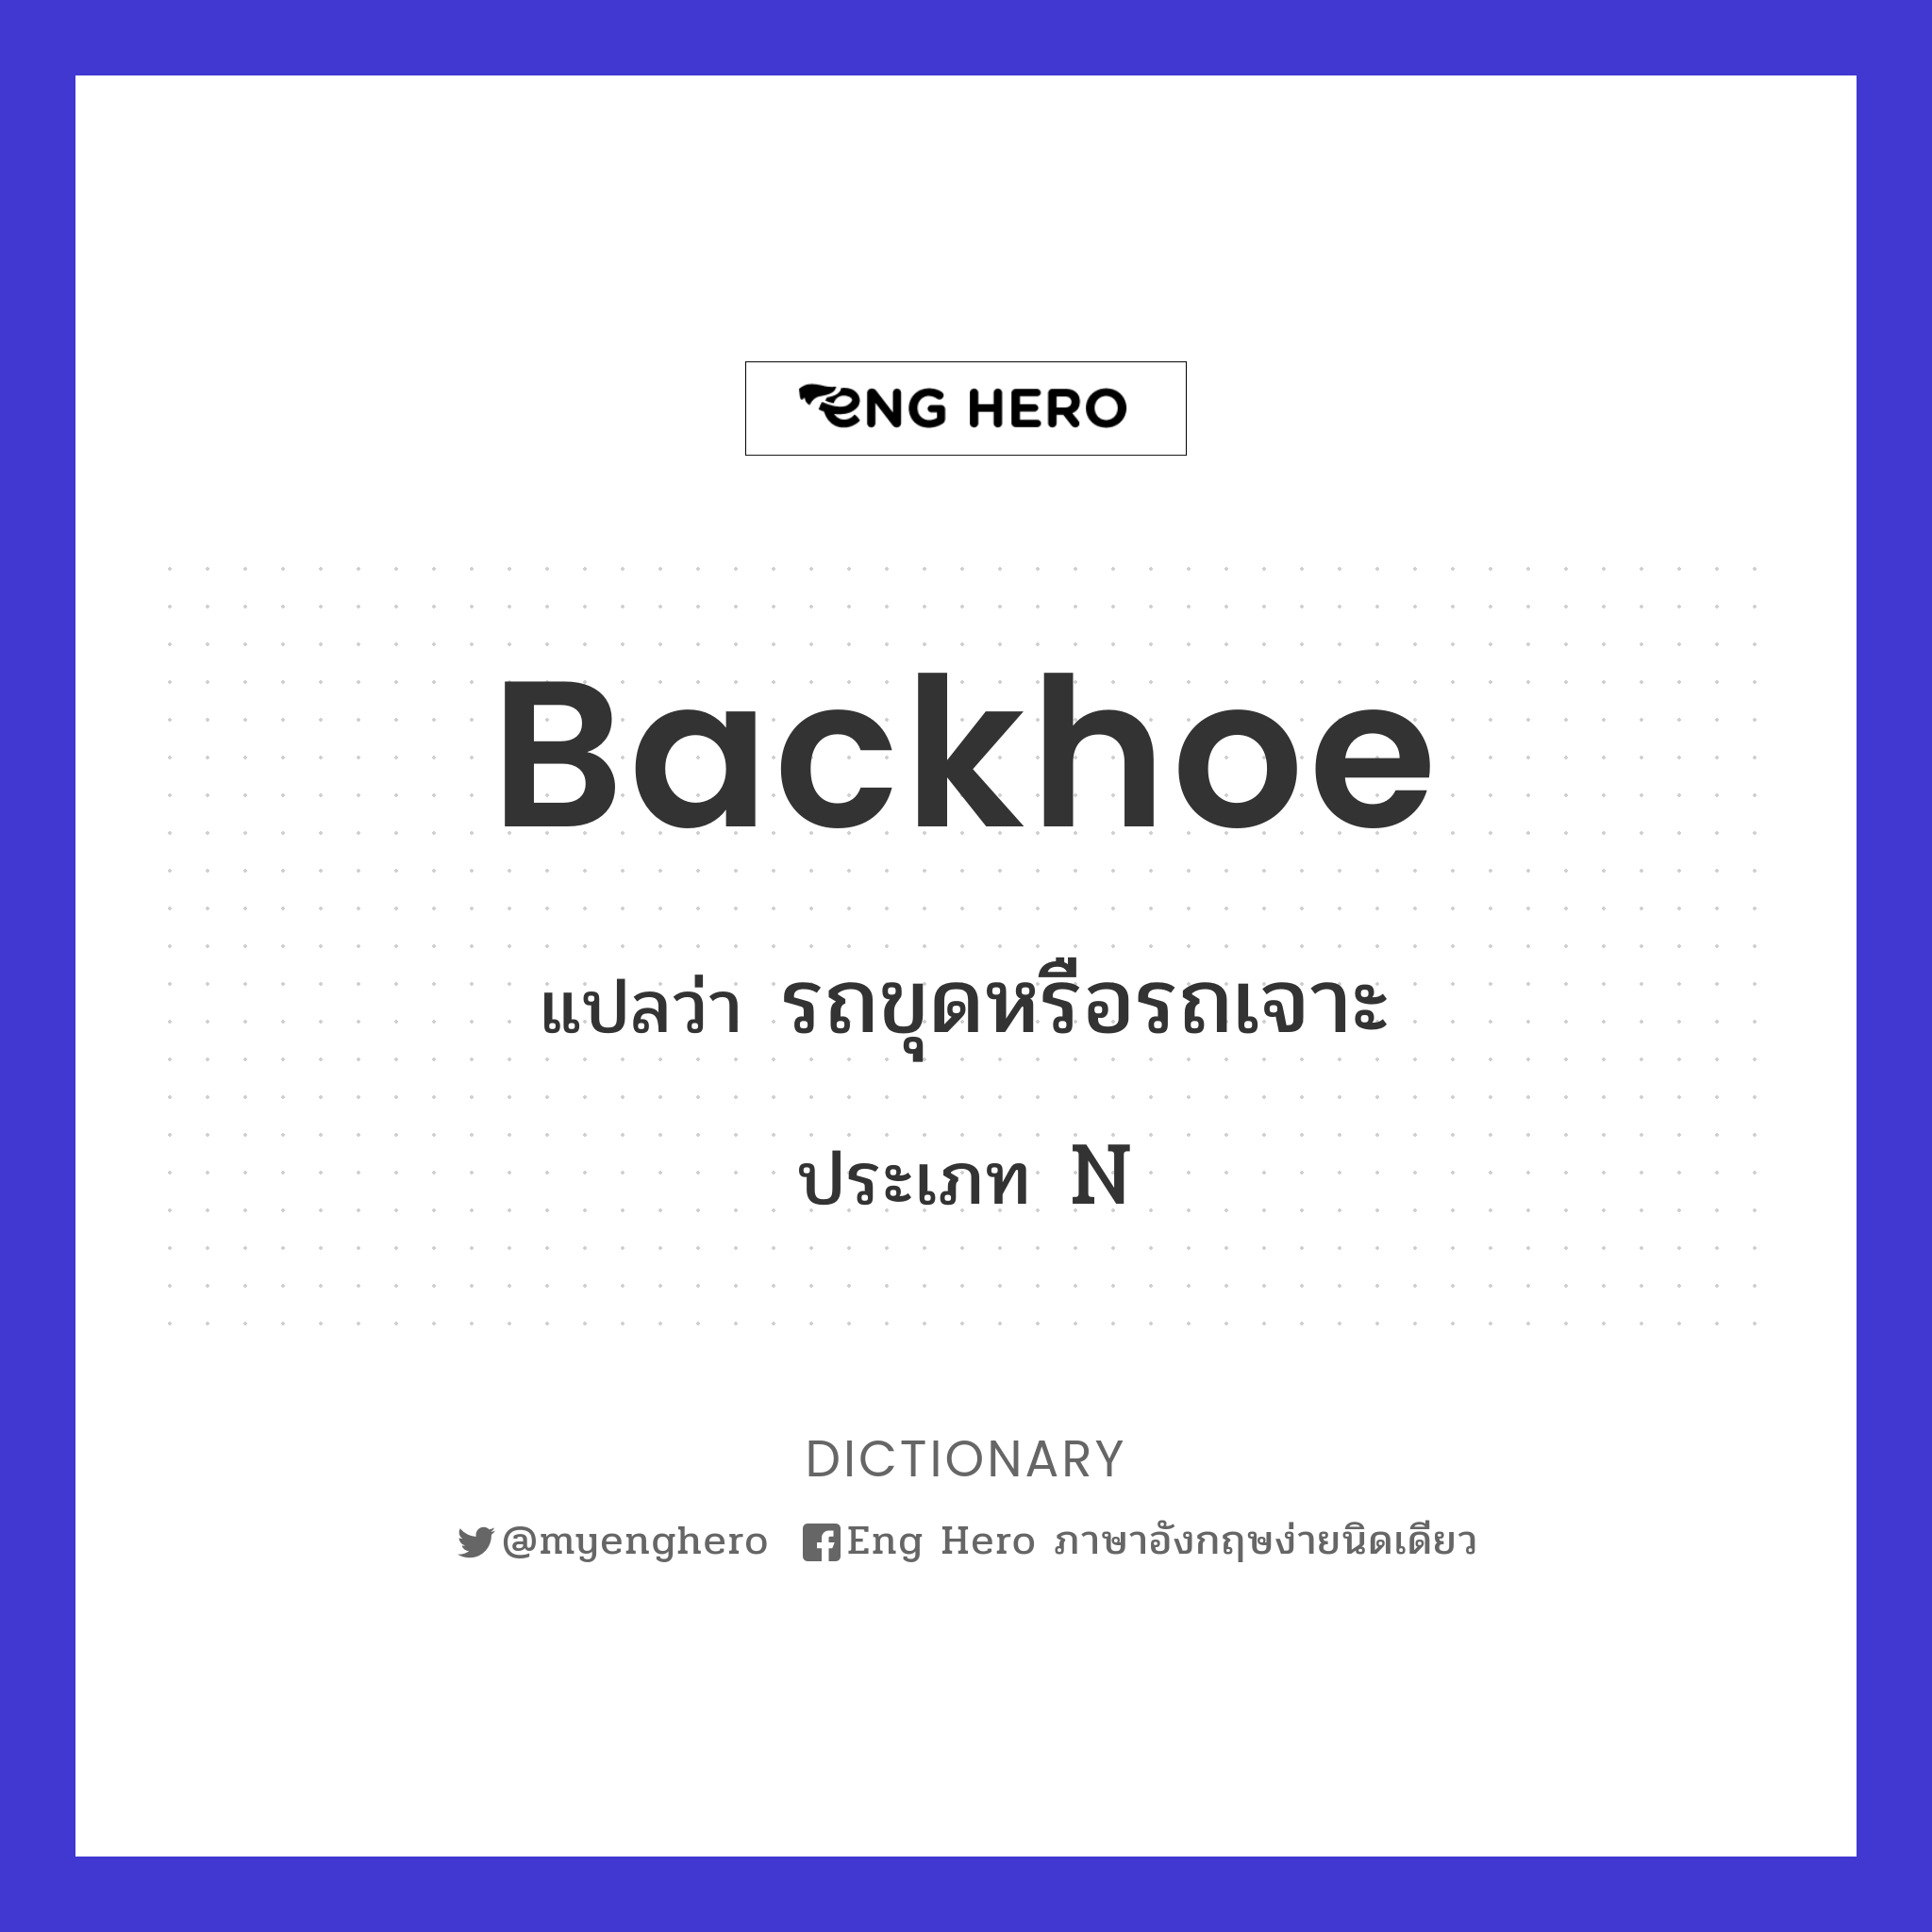 backhoe